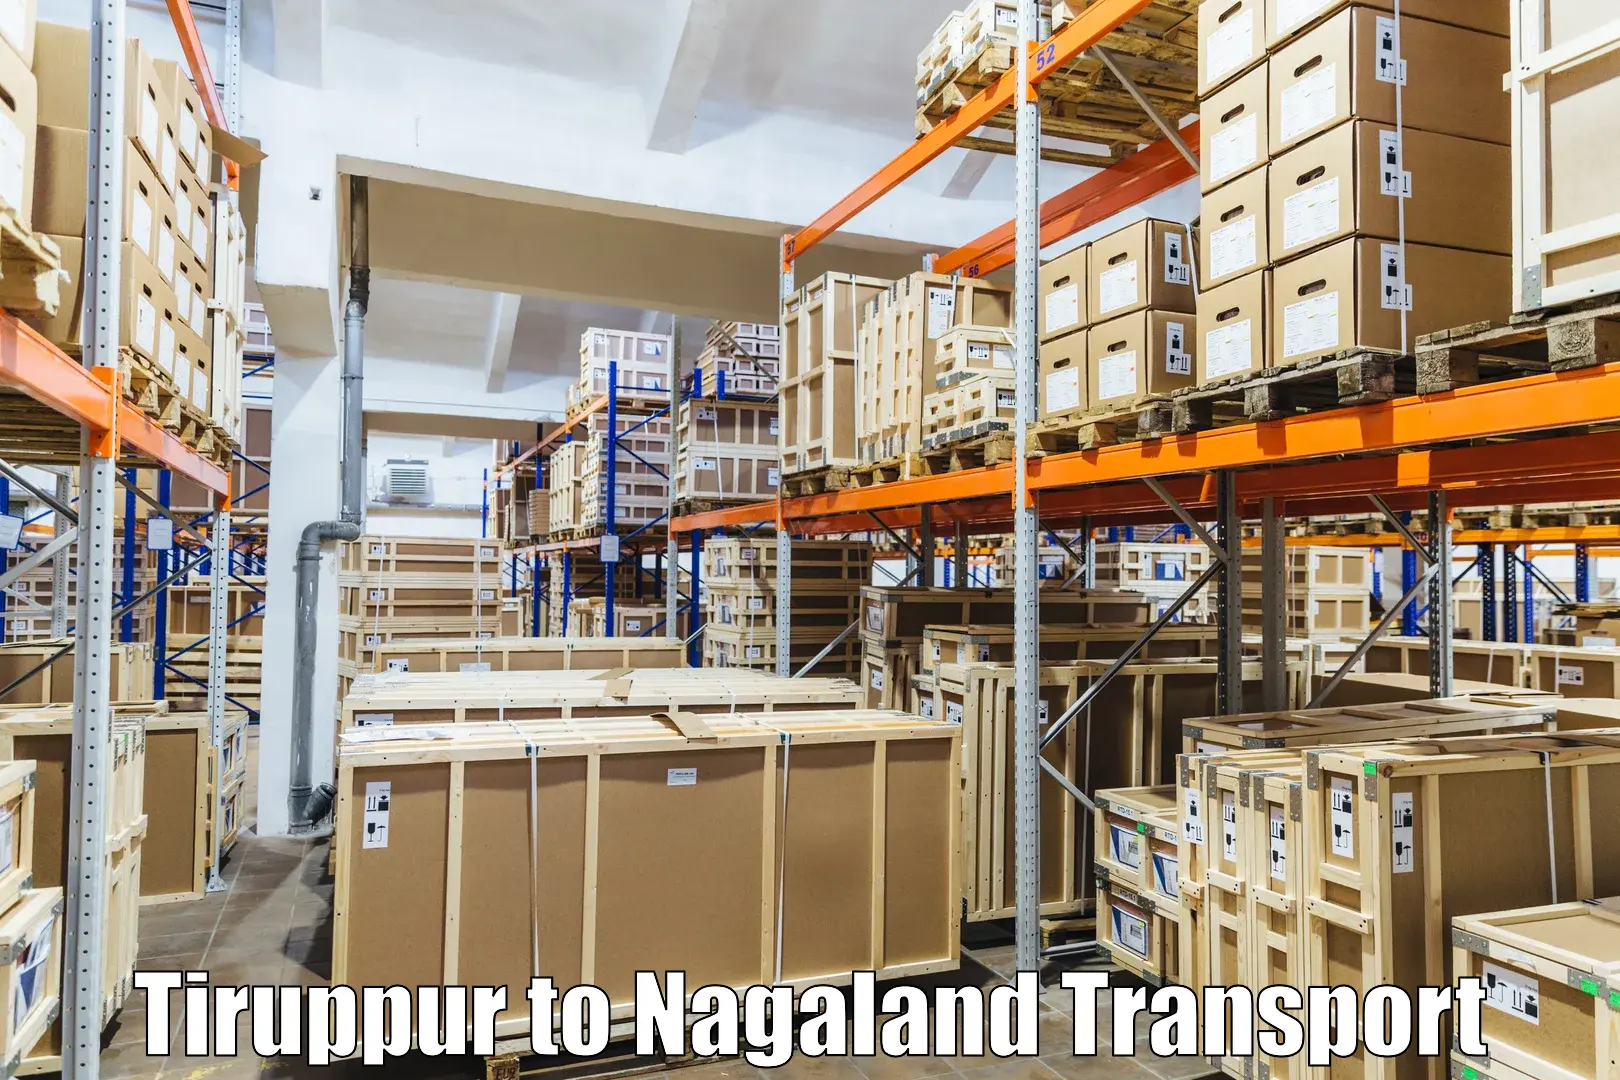 Online transport Tiruppur to NIT Nagaland